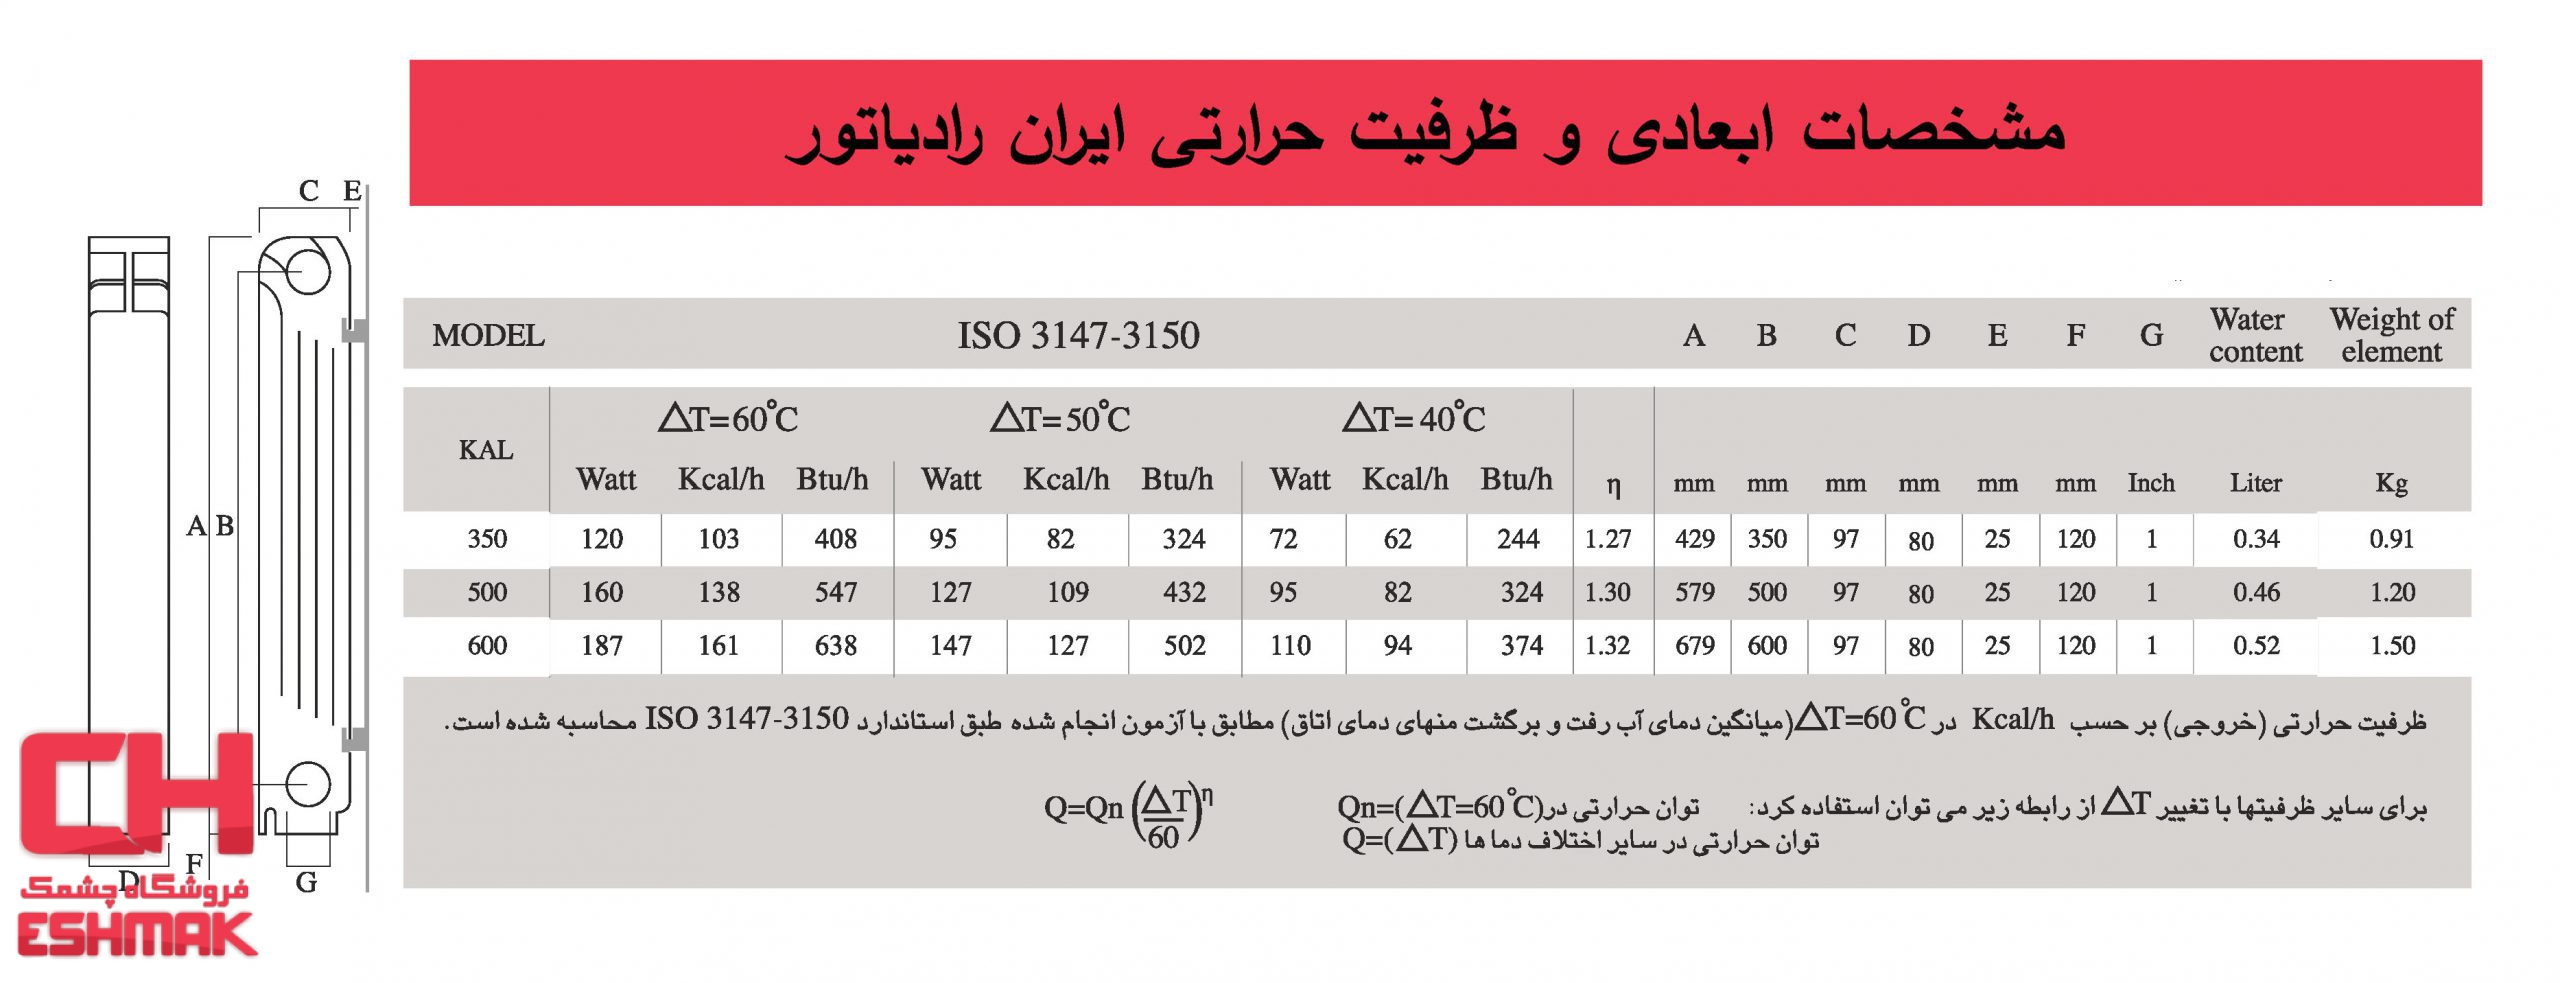 جدول مشخصات رادیاتور آلومینیومی ایران رادیاتور مدل کال 500